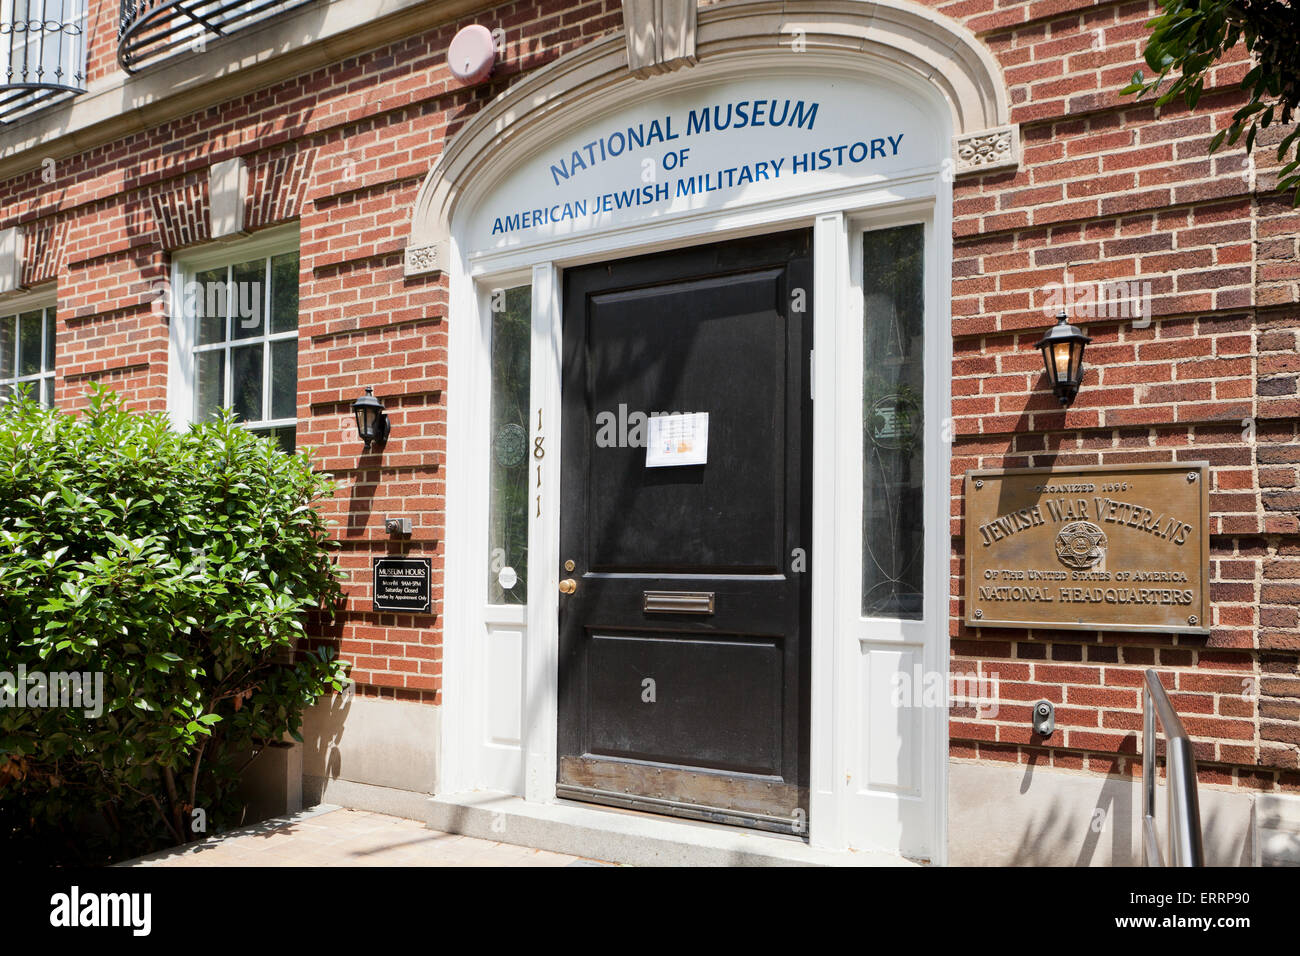 Musée national d'histoire militaire juive américaine - Washington, DC USA Banque D'Images